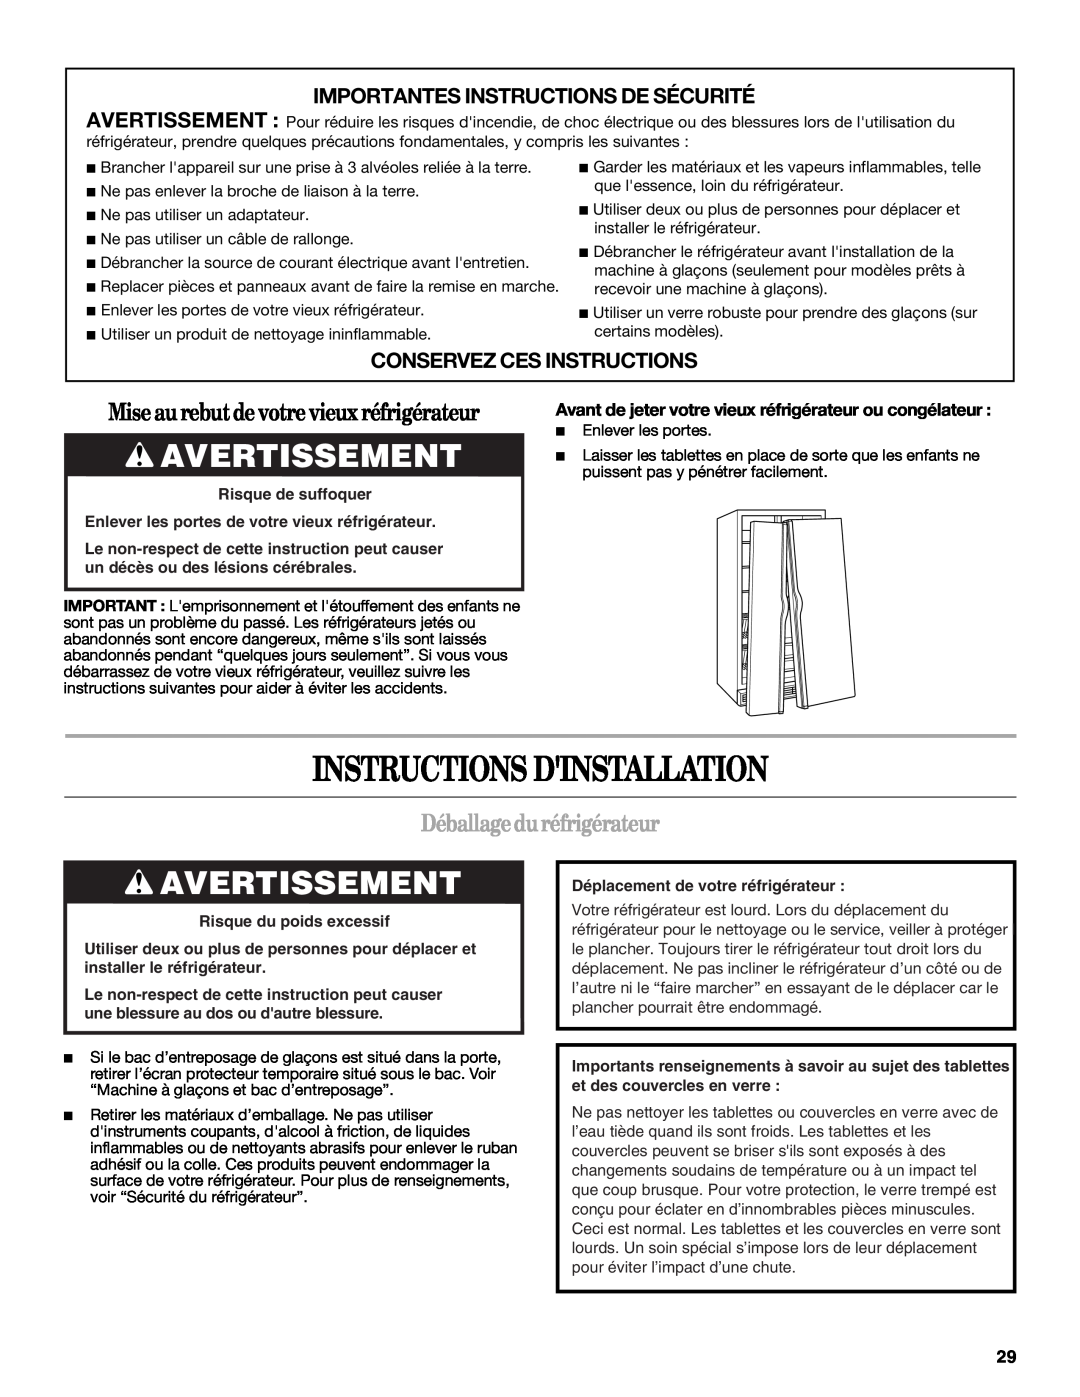 Whirlpool ED5LVAXV warranty Instructions Dinstallation, Avertissement, Miseaurebutdevotrevieuxréfrigérateur 